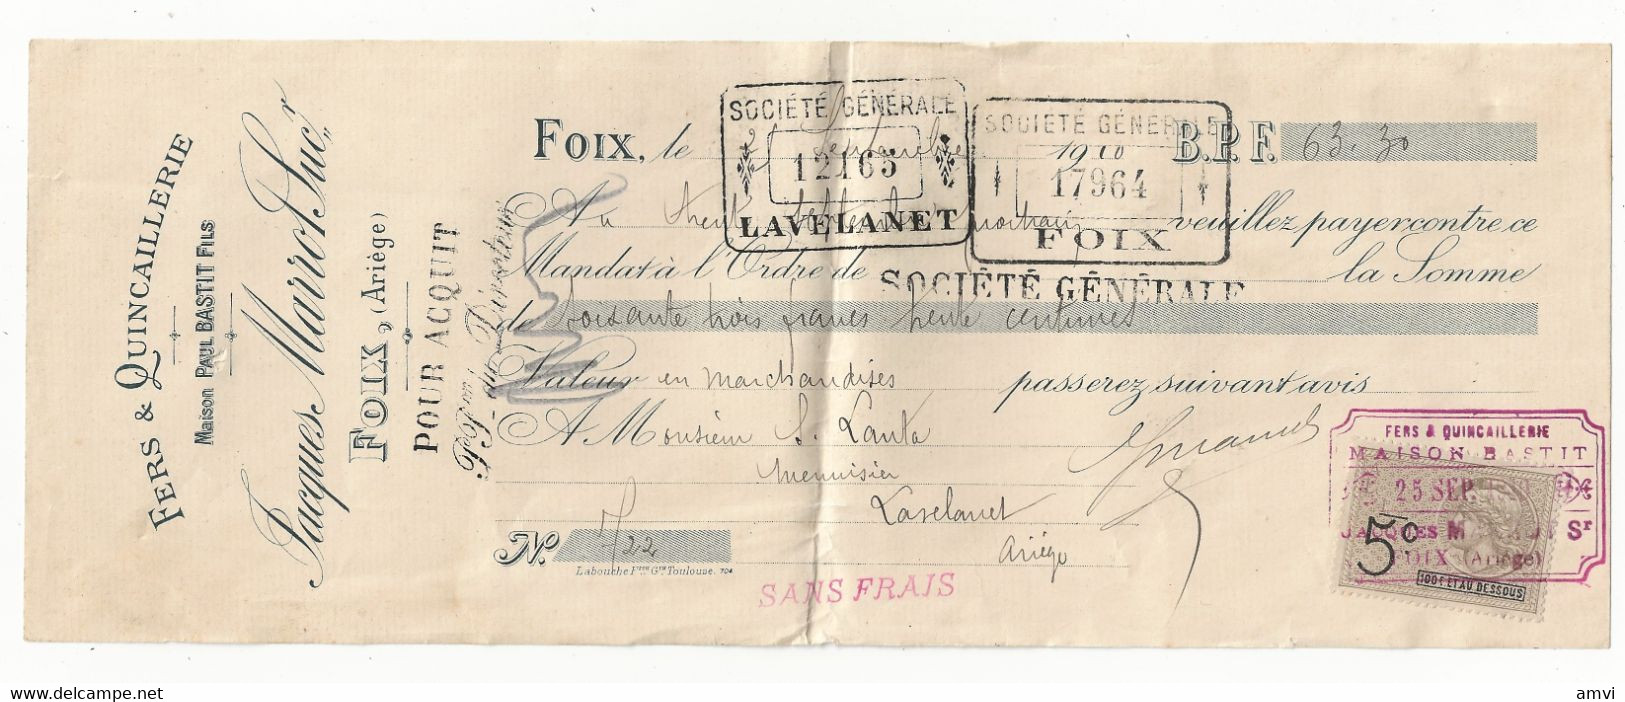 ( 4382)  1910 Lettre De Change Foix Jacques MARROT FERS ET QUINCAILLERIE - Bills Of Exchange